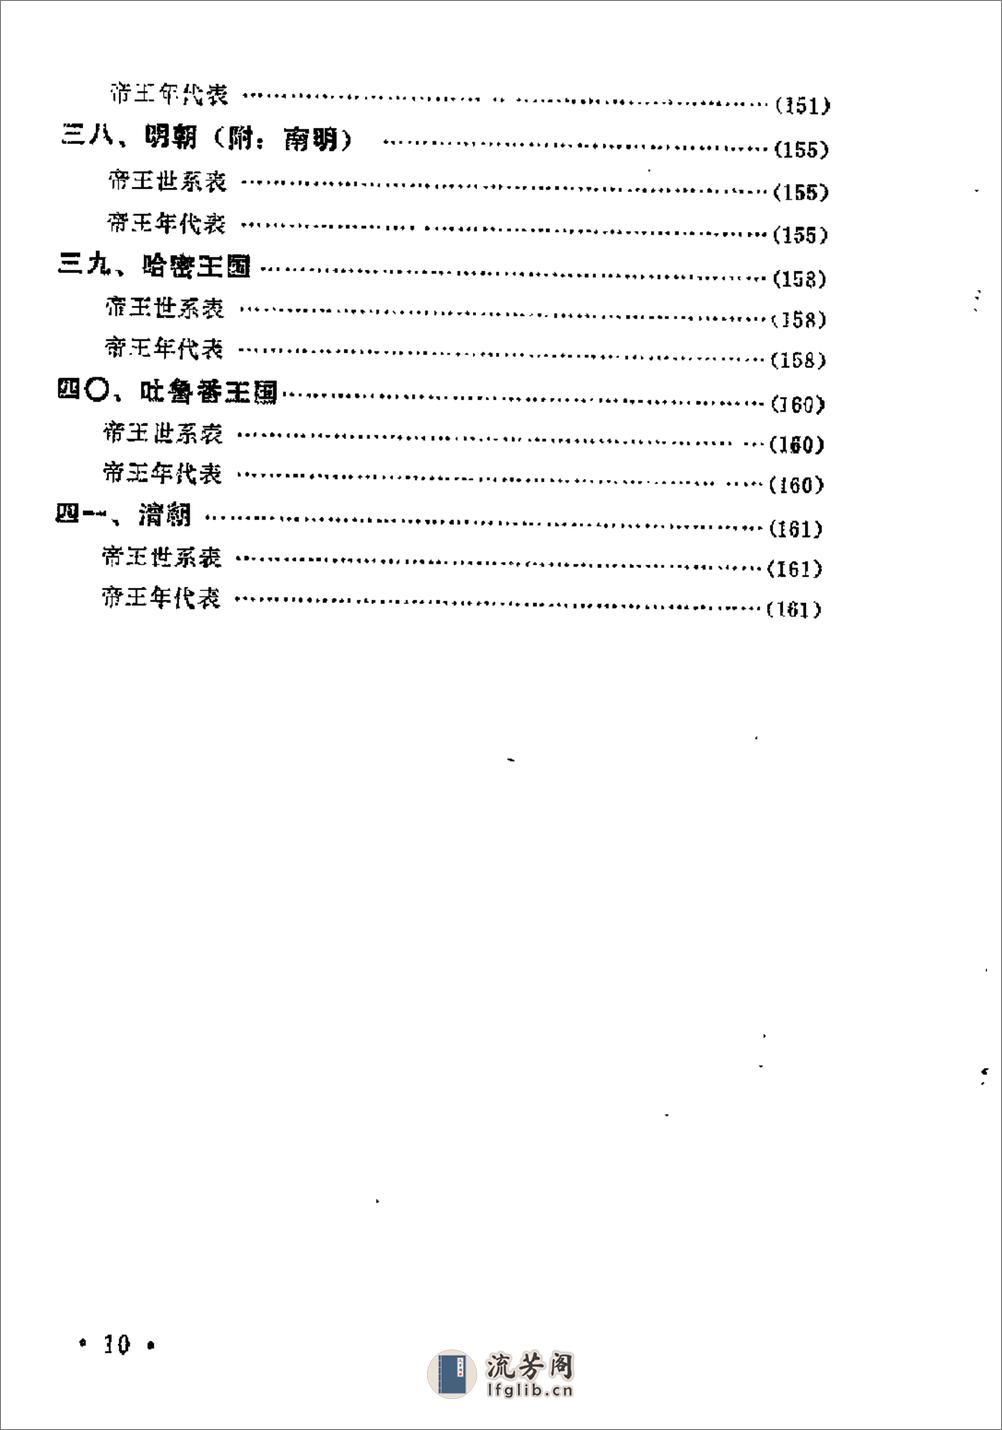 中国历史纪年简表·陈作良·中央党校1985 - 第13页预览图